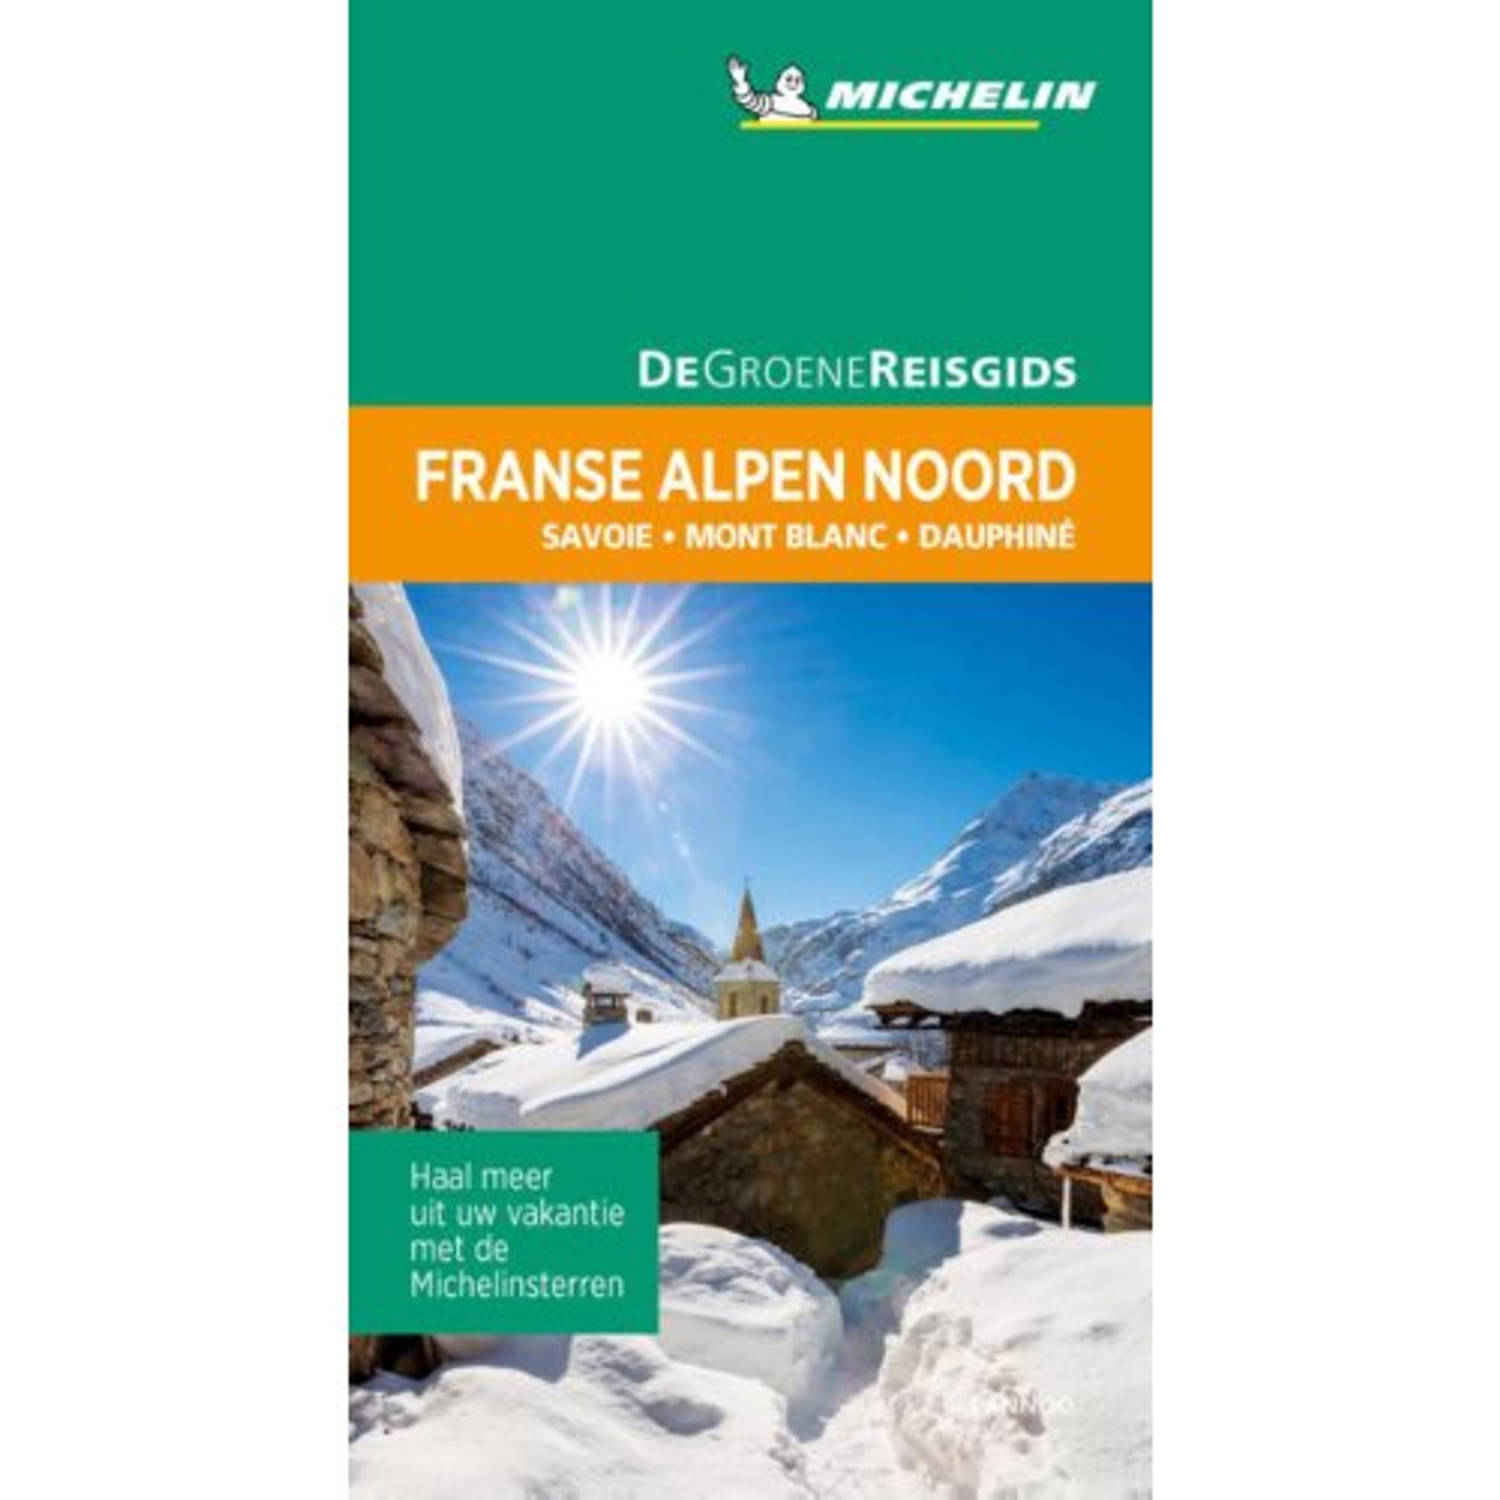 De Groene Reisgids - Franse Alpen Noord